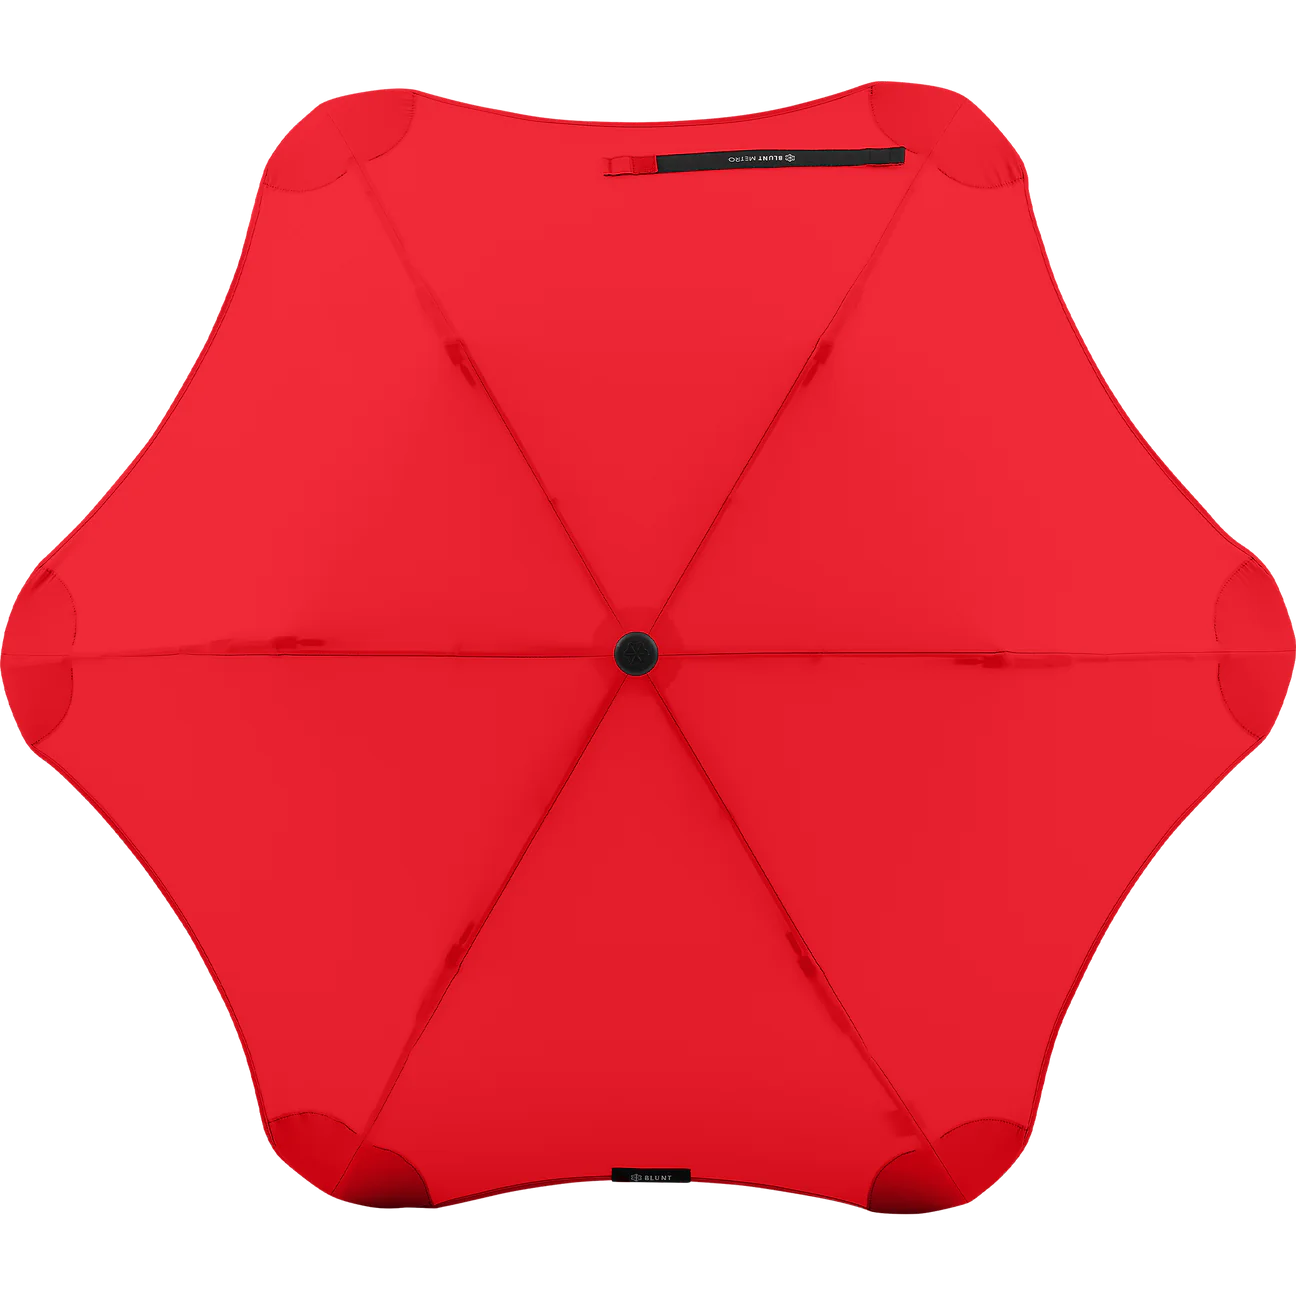 Blunt Metro Umbrella 100cm - red